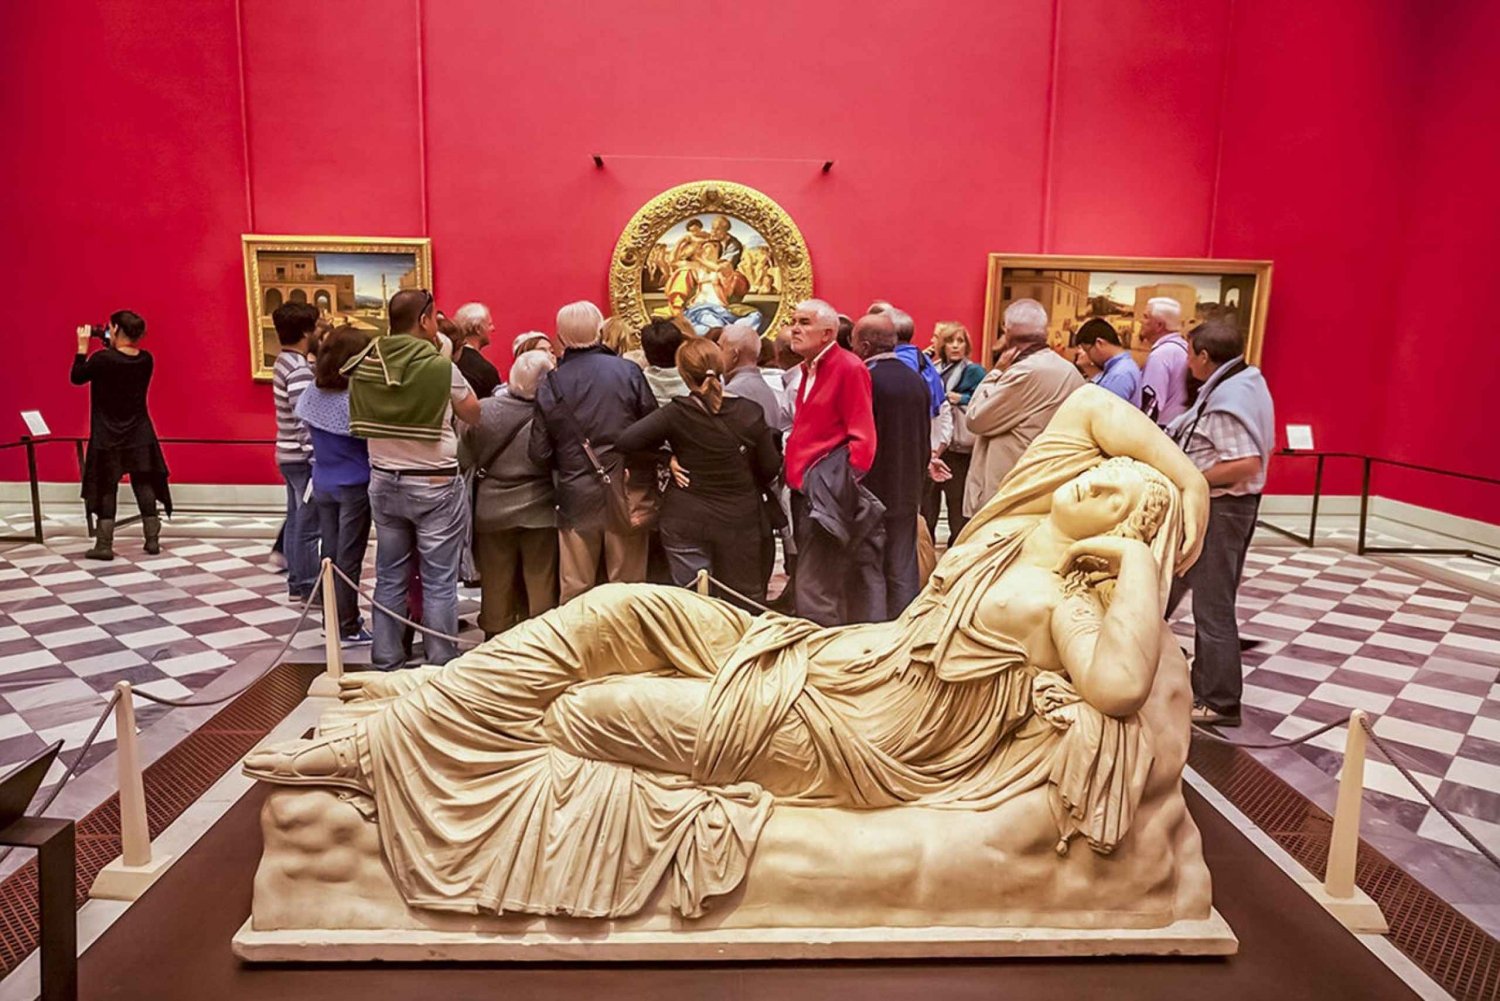 Florencja: Bilet wstępu o określonej godzinie do Galerii Uffizi z pominięciem kolejki